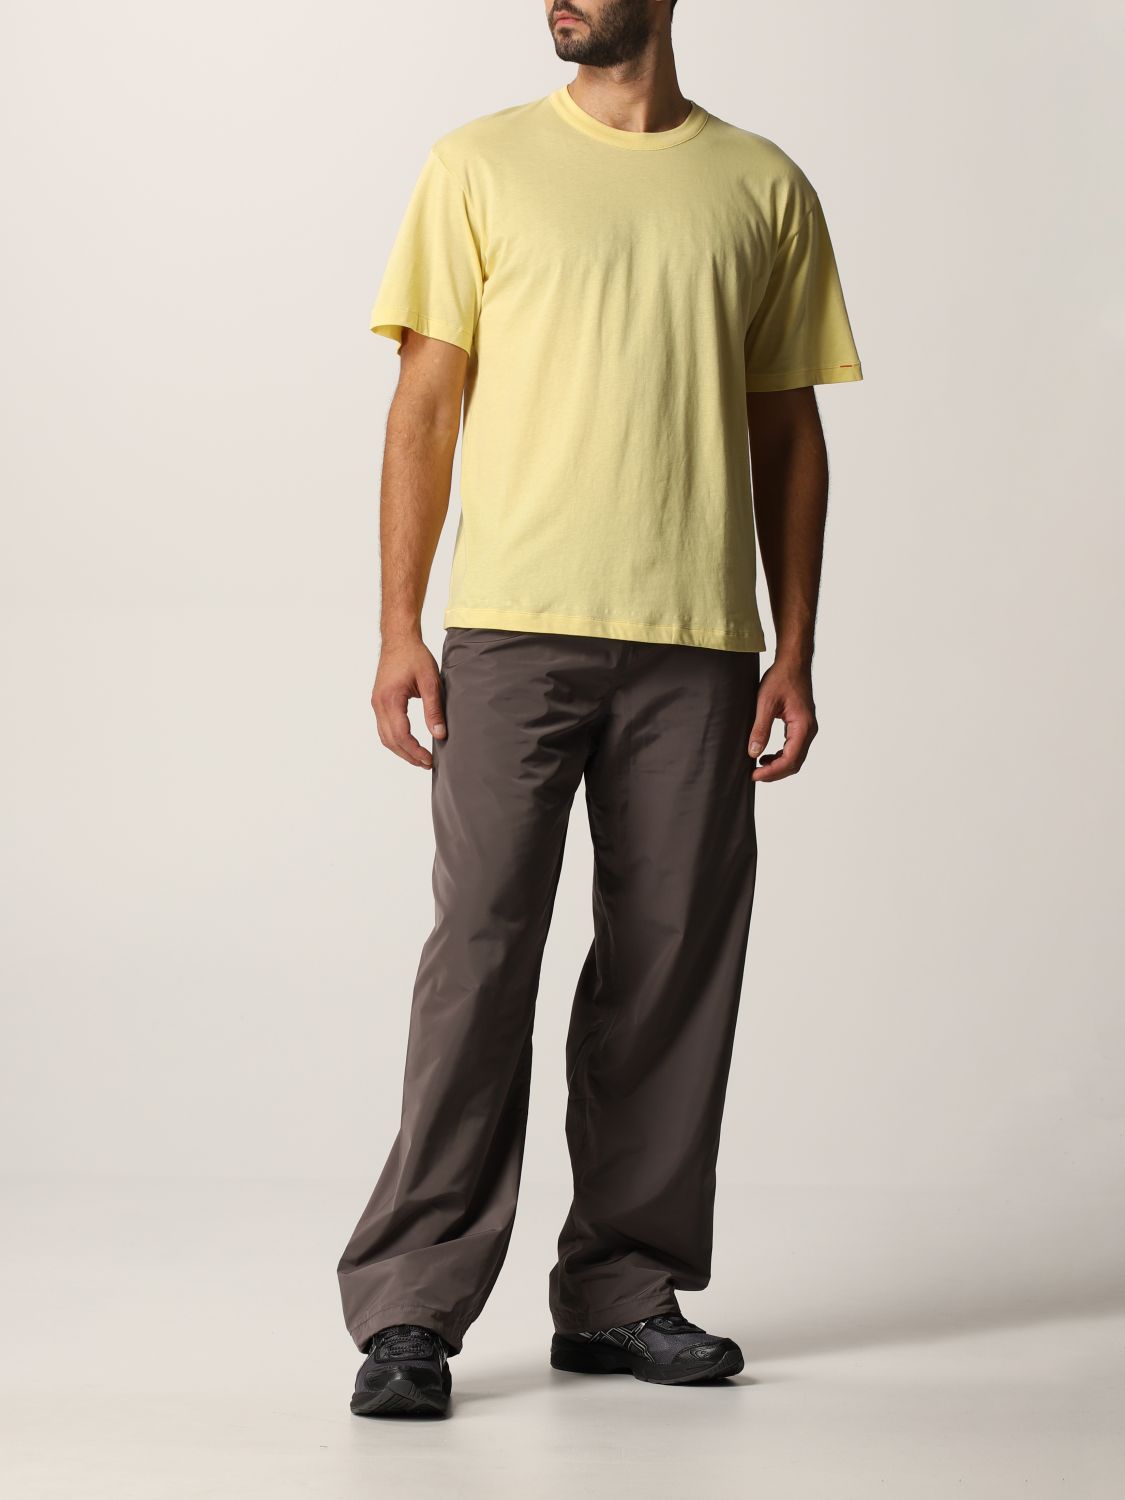 T-Shirt Heron Preston For Calvin Klein: T-shirt herren Orange 2.0-heron Preston X Calvin Klein schwarz 7